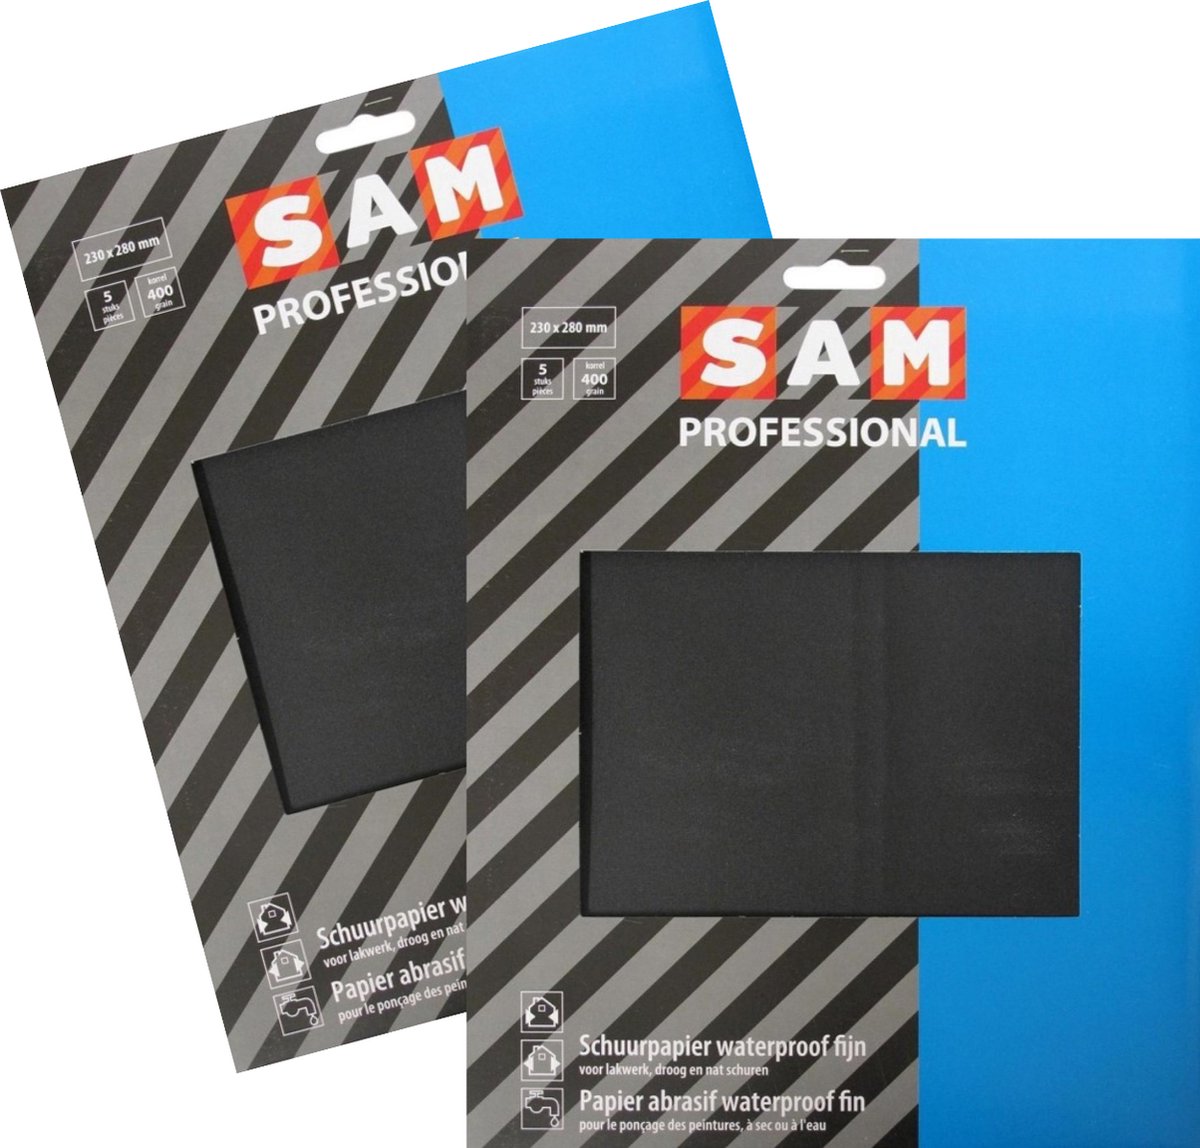 SAM professional schuurpapier - waterproof - korrel 400 - schuren en slijpen van verf, lak en plamuur - zeer geschikt voor autolakken - 2 x 5 stuks